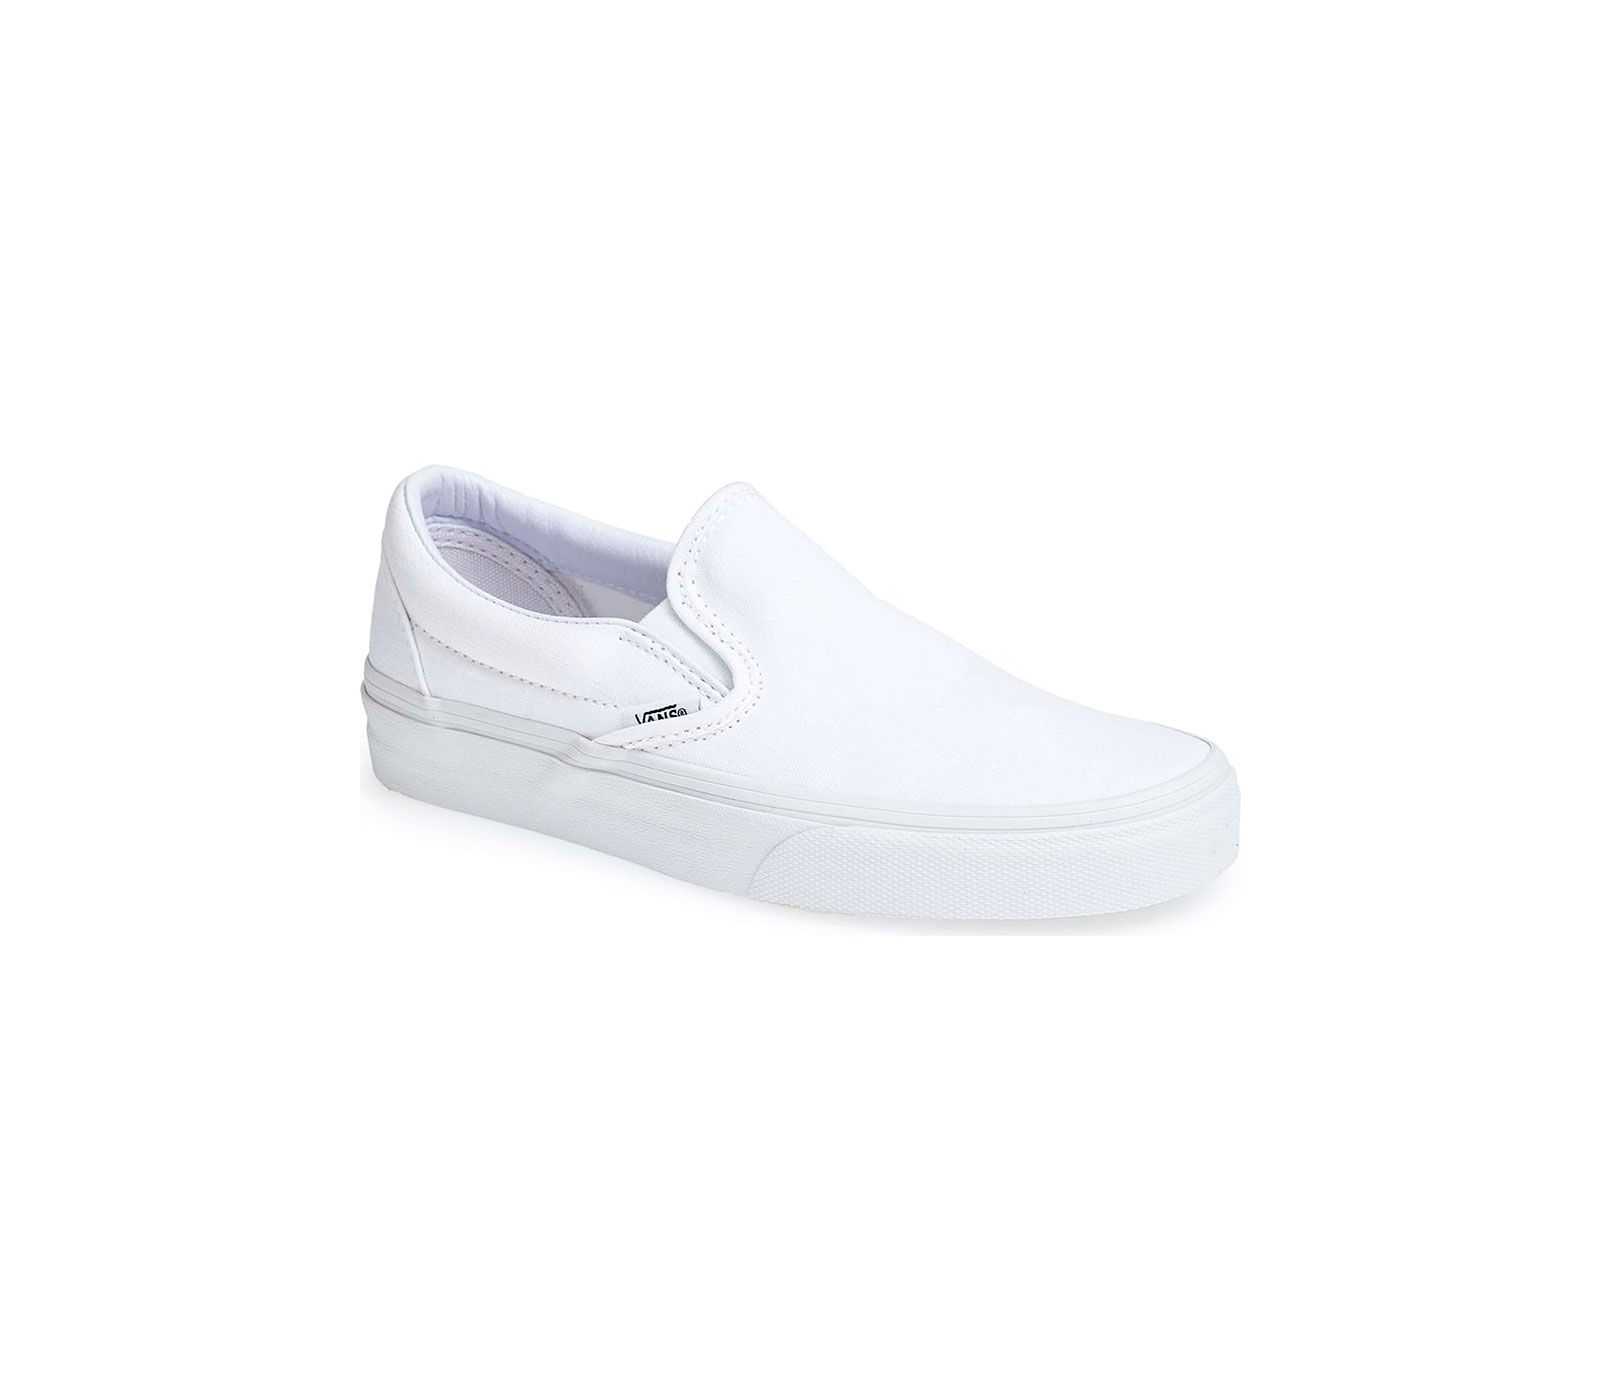 Her Şeyle Giymek İsteyeceğiniz 7 Şık Beyaz Spor Ayakkabı